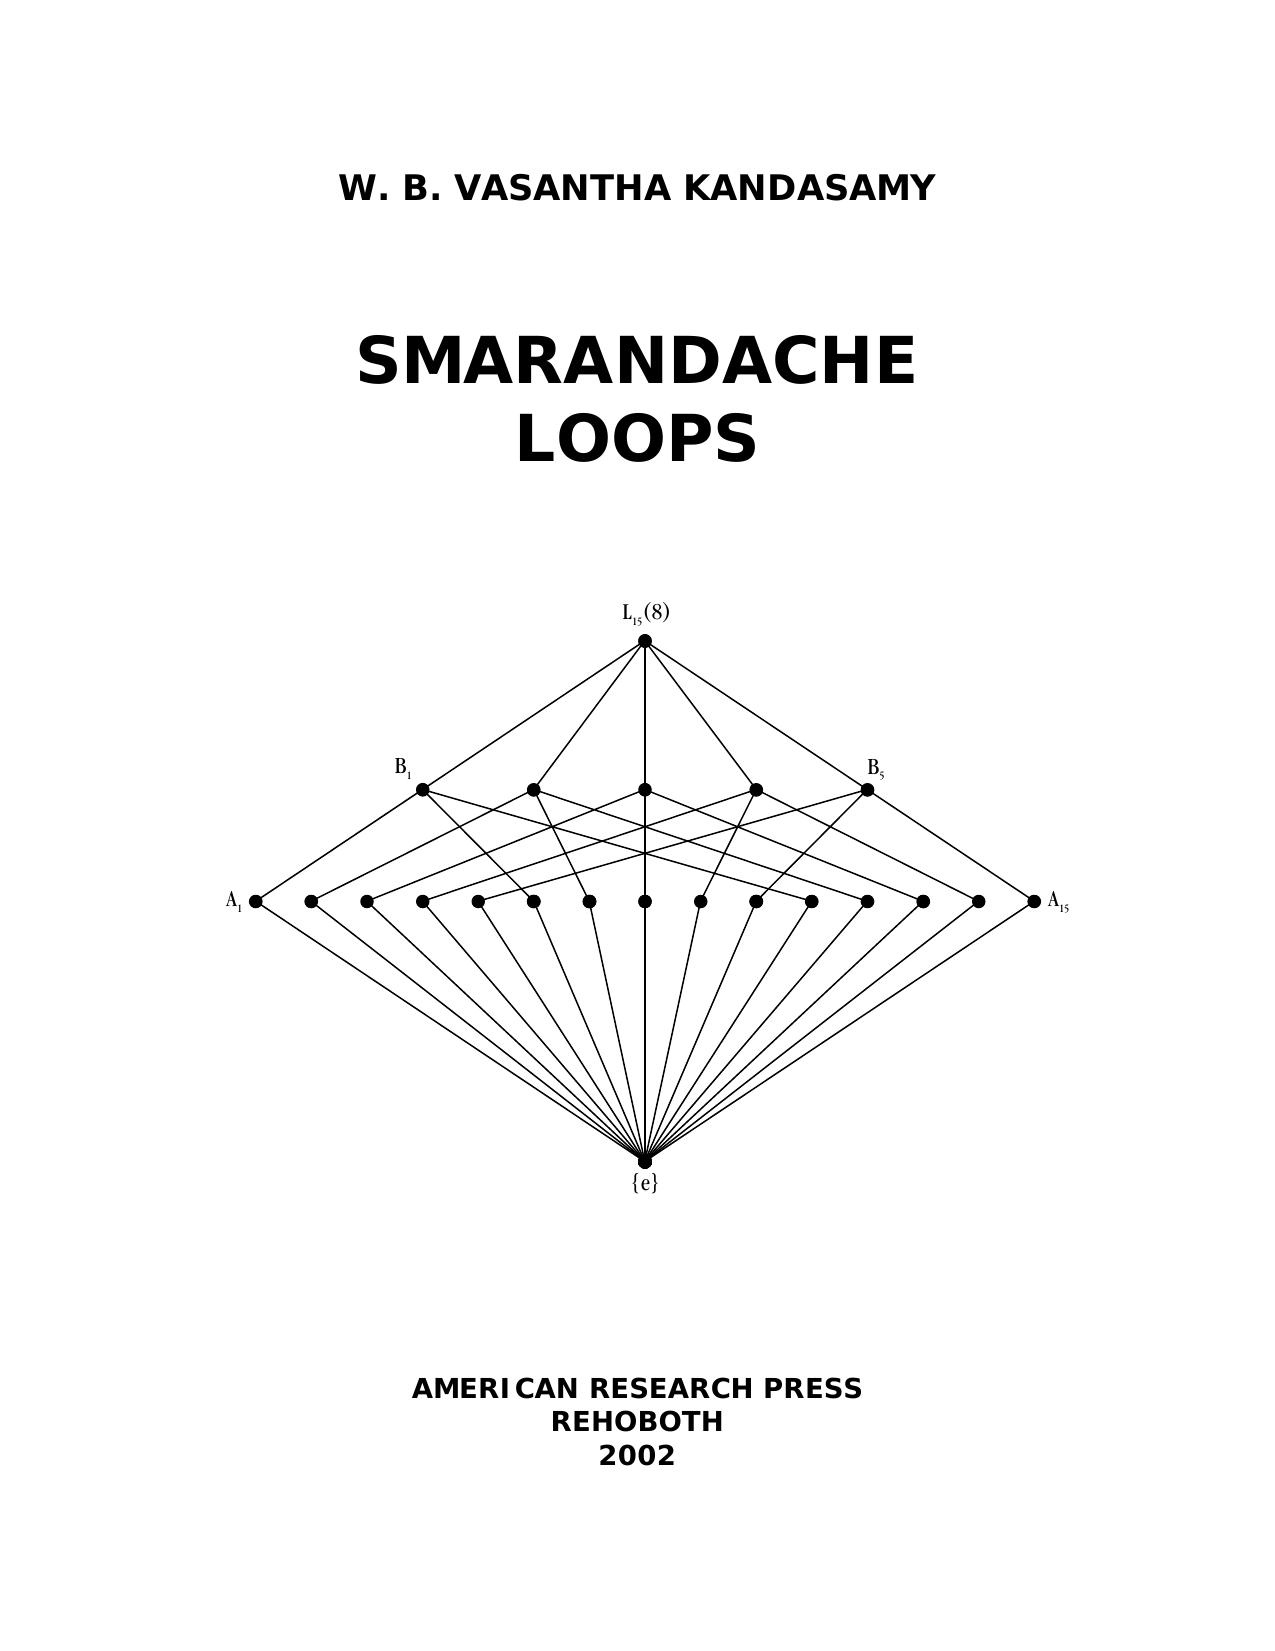 Smarandache Loops